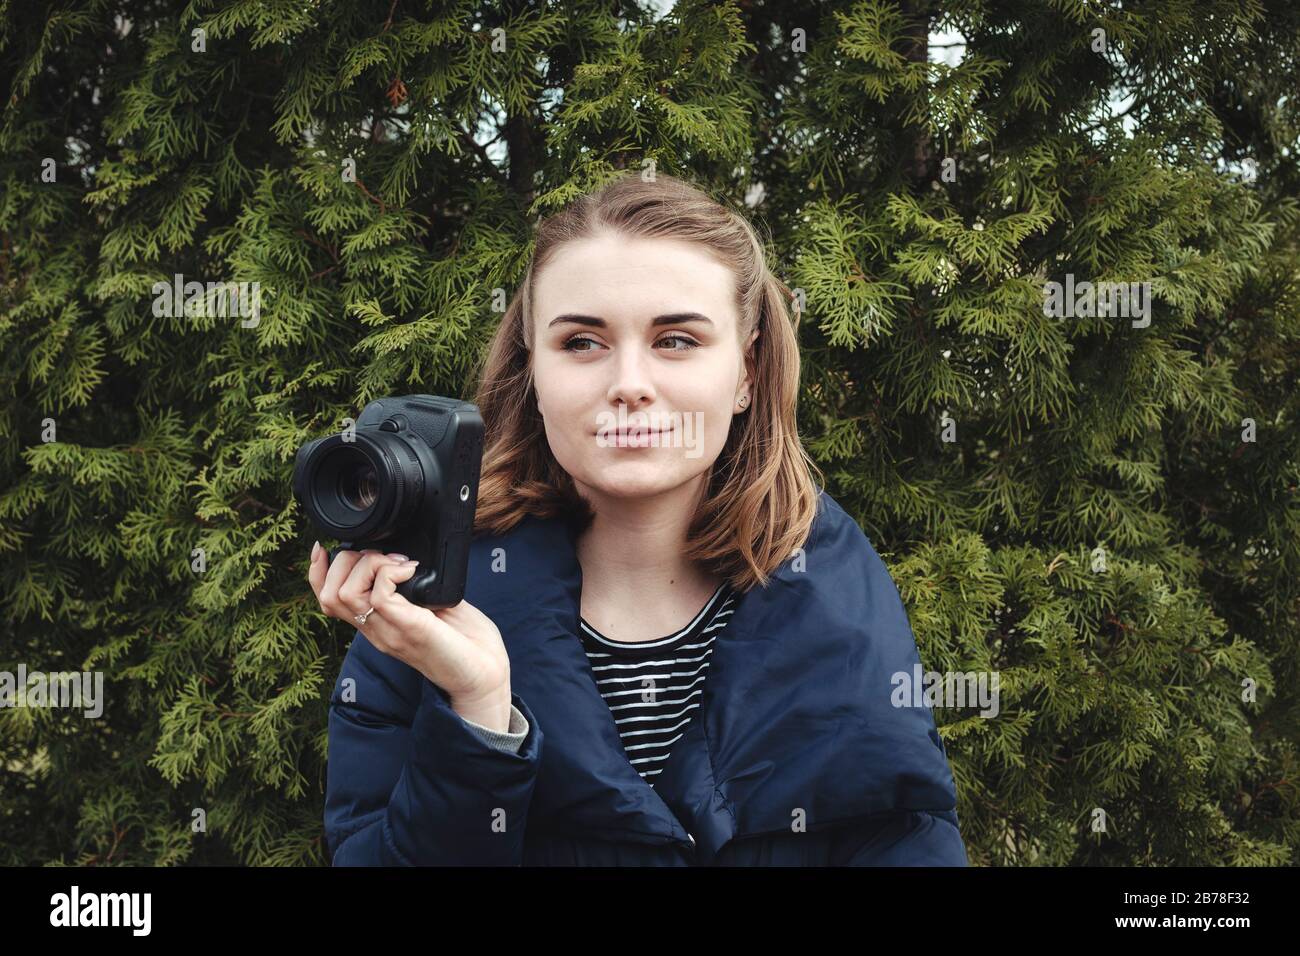 Attraktive lächelnde Fotografin hält ihre Kamera in einer Hand Stockfoto